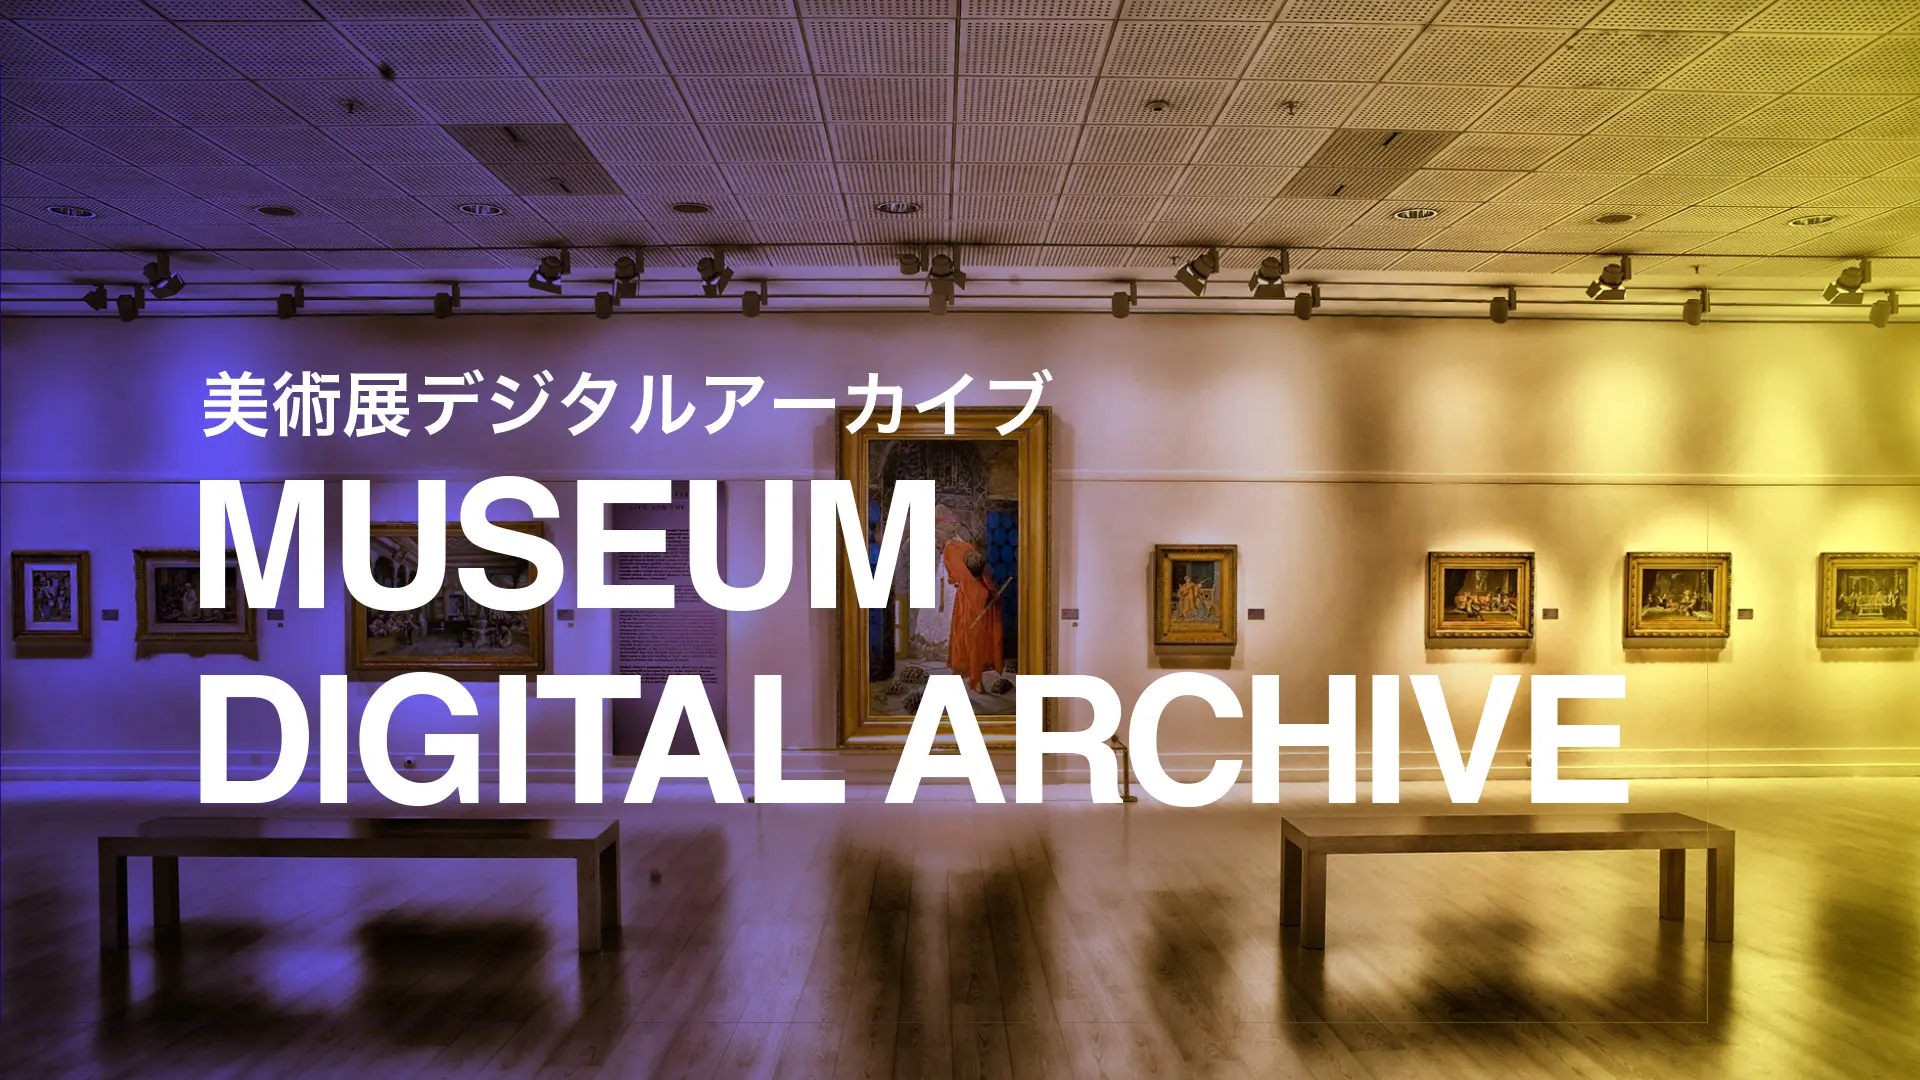 株式会社DiO museum digital archive事業 美術展デジタルアーカイブ